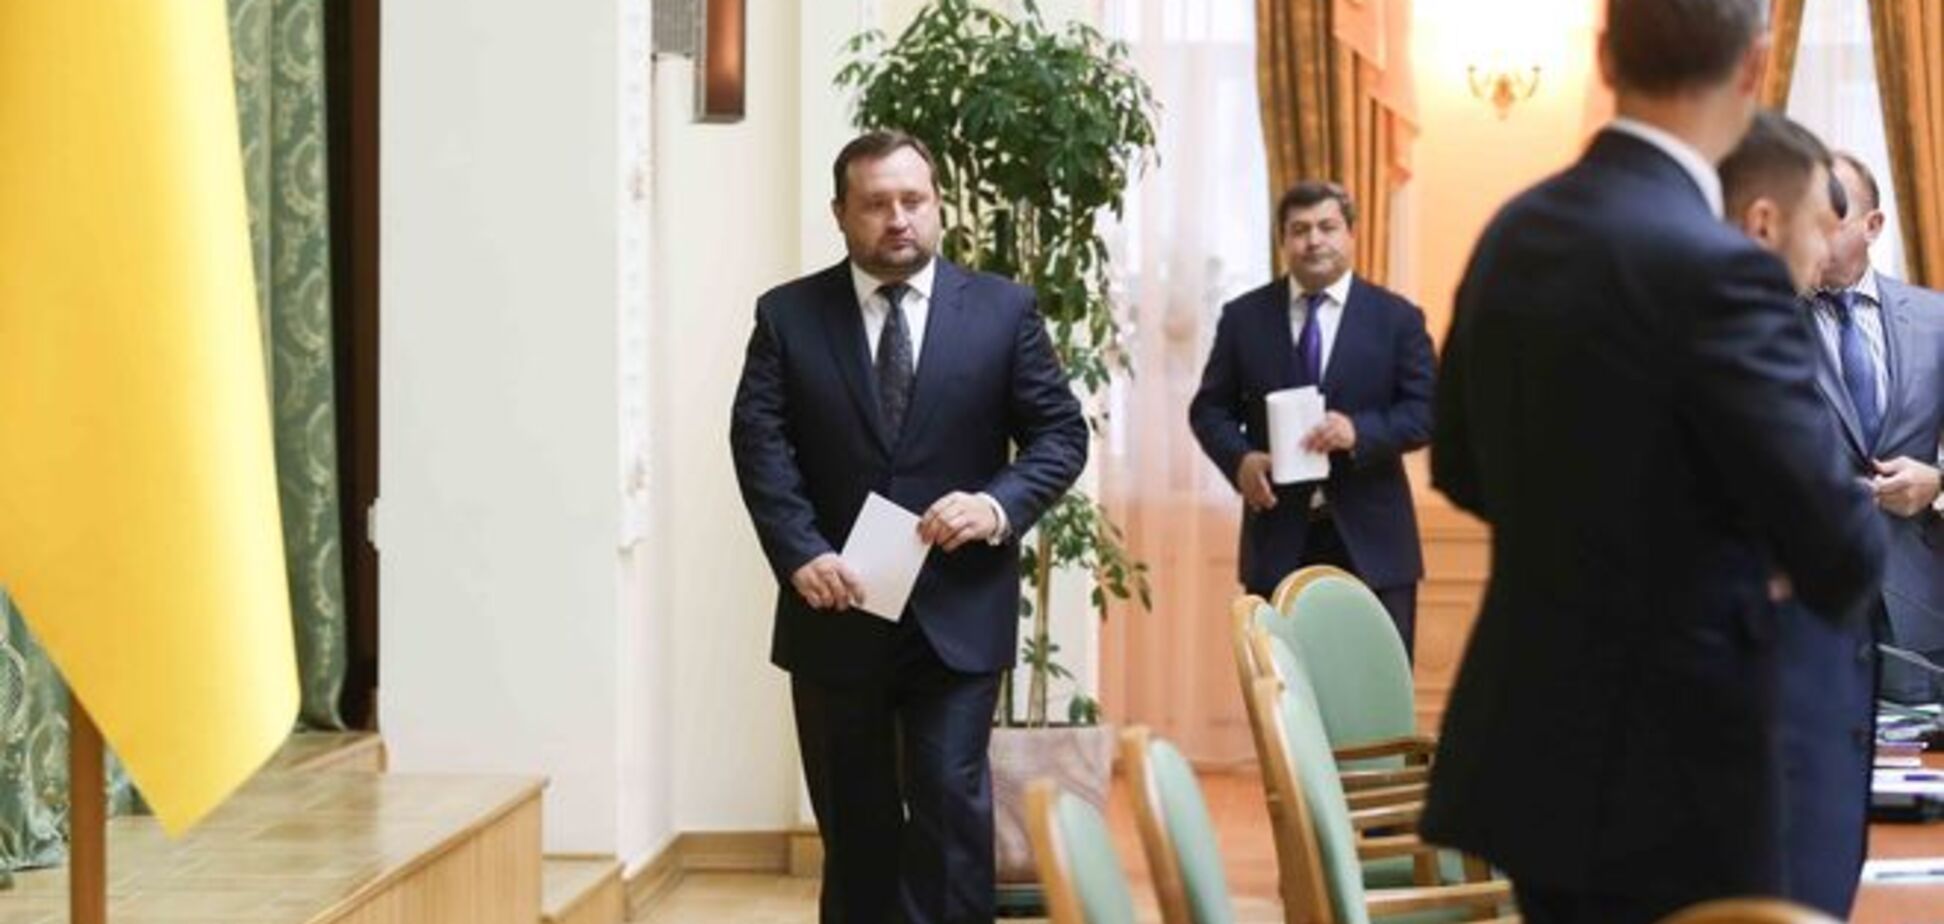 Син Януковича розповів про свій зв'язок з Арбузовим